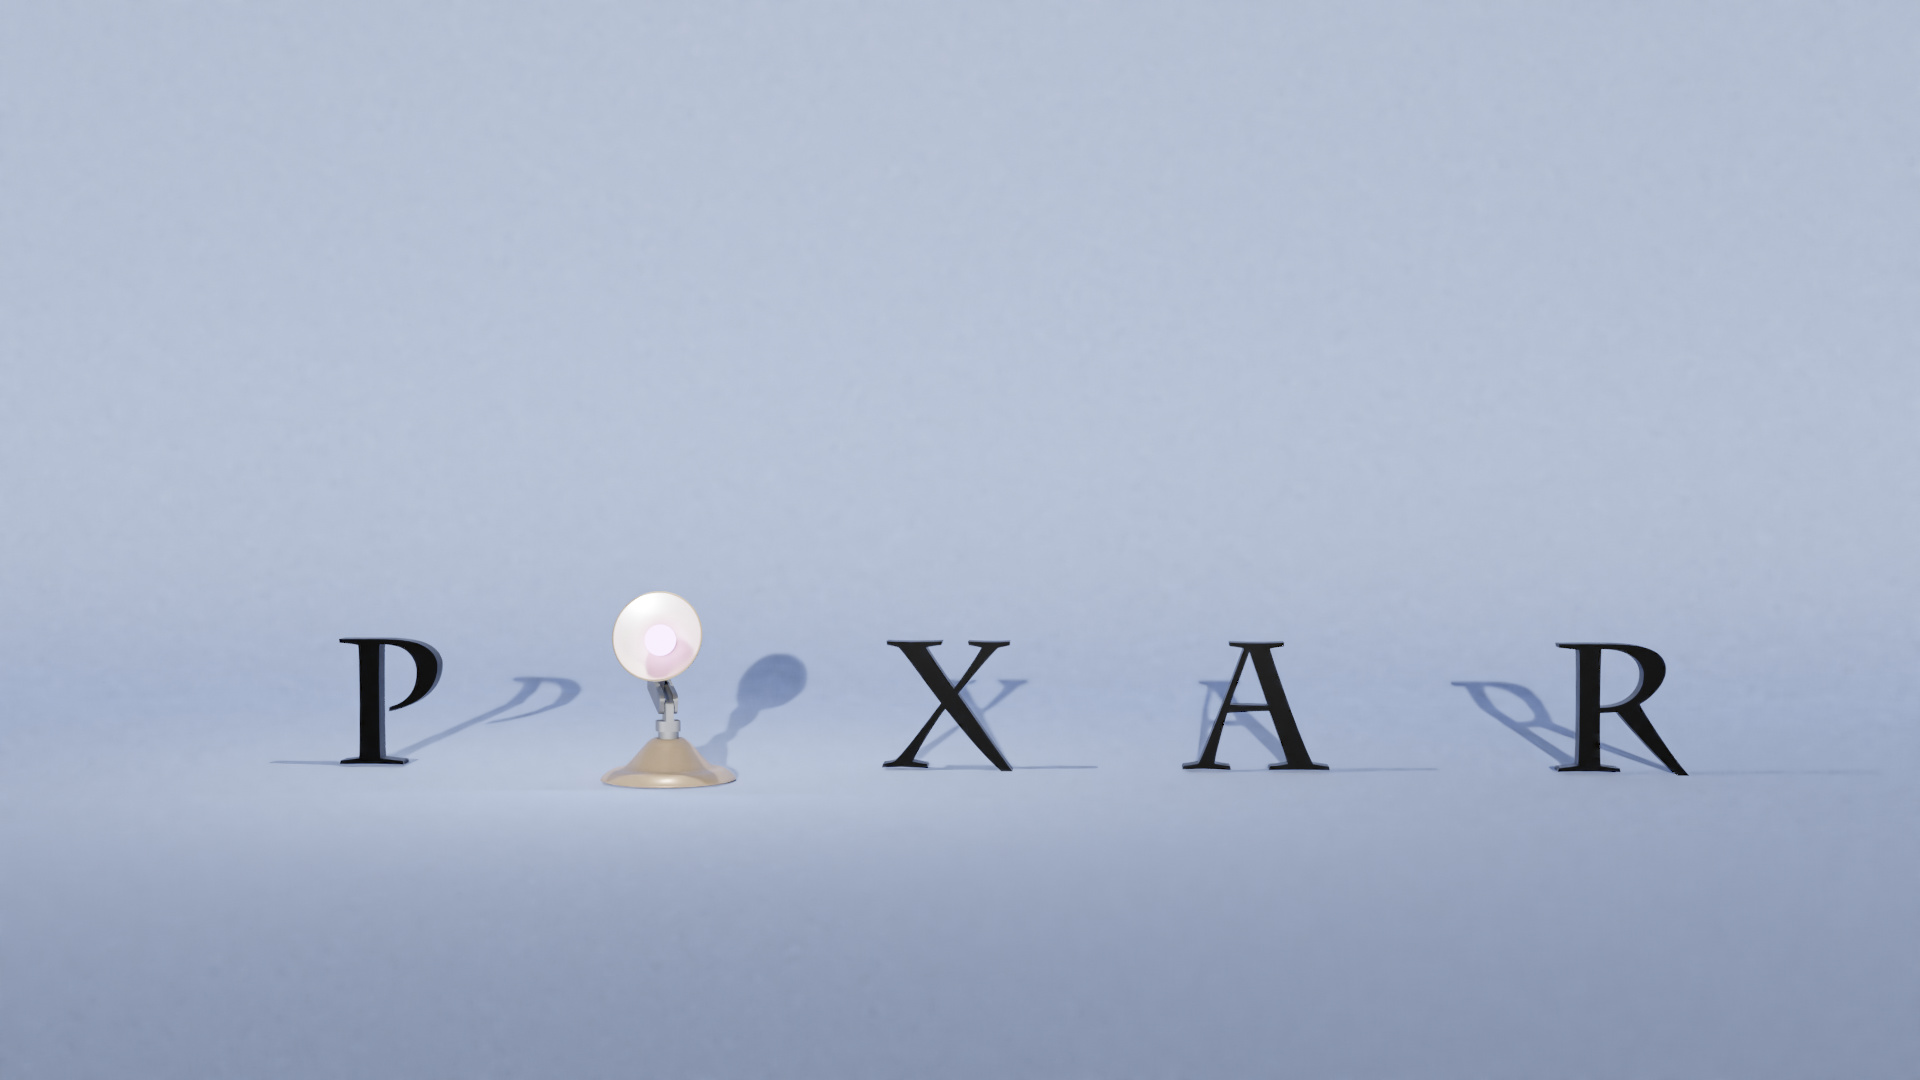 Pixar posters. Лампа Пиксар. Pixar лампа. Люстра Пиксар. Структура истории Pixar.